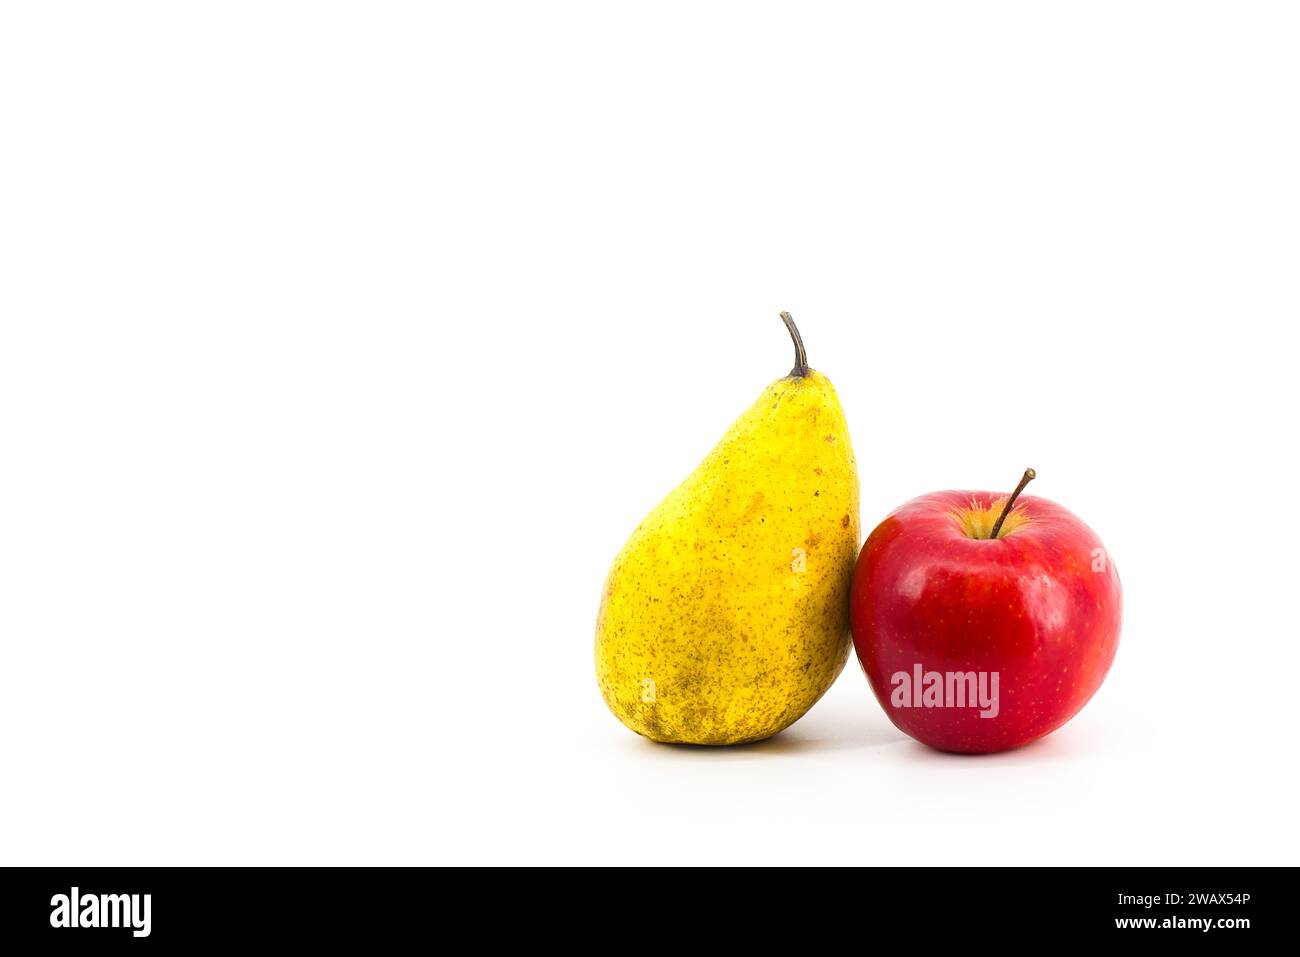 Une image vibrante présentant une poire jaune et une pomme rouge sur un fond blanc immaculé. Les couleurs contrastées créent une compositio visuellement attrayante Banque D'Images